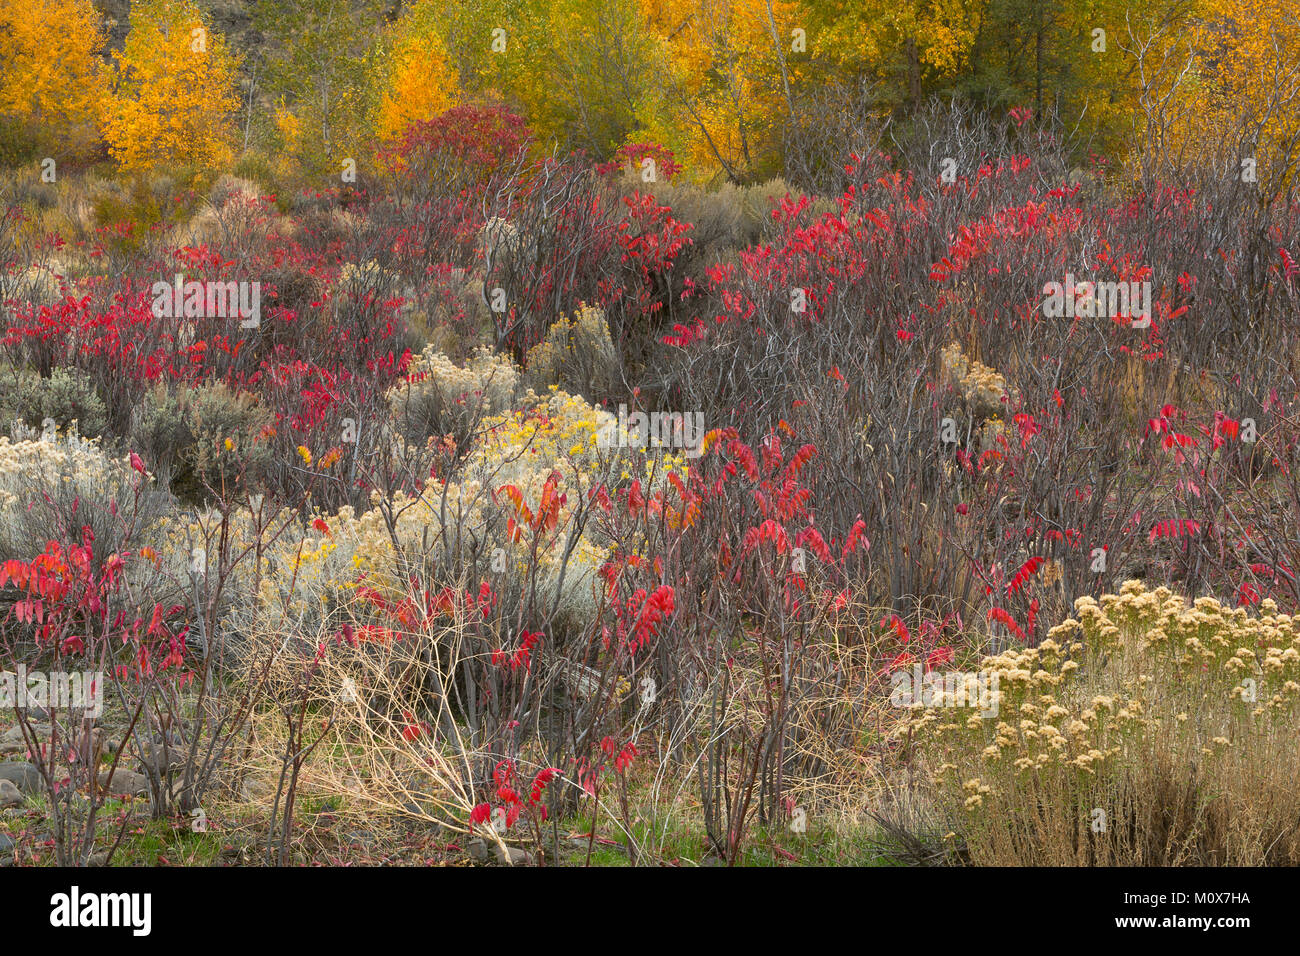 Ein wilder Garten Pflanzen entlang einem Flußbett in der Great Basin Wüste  von Washington. Rabbitbrush, Salbei, Sumach, und cottonwood sorgen für  einen farbenfrohen Herbst Stockfotografie - Alamy